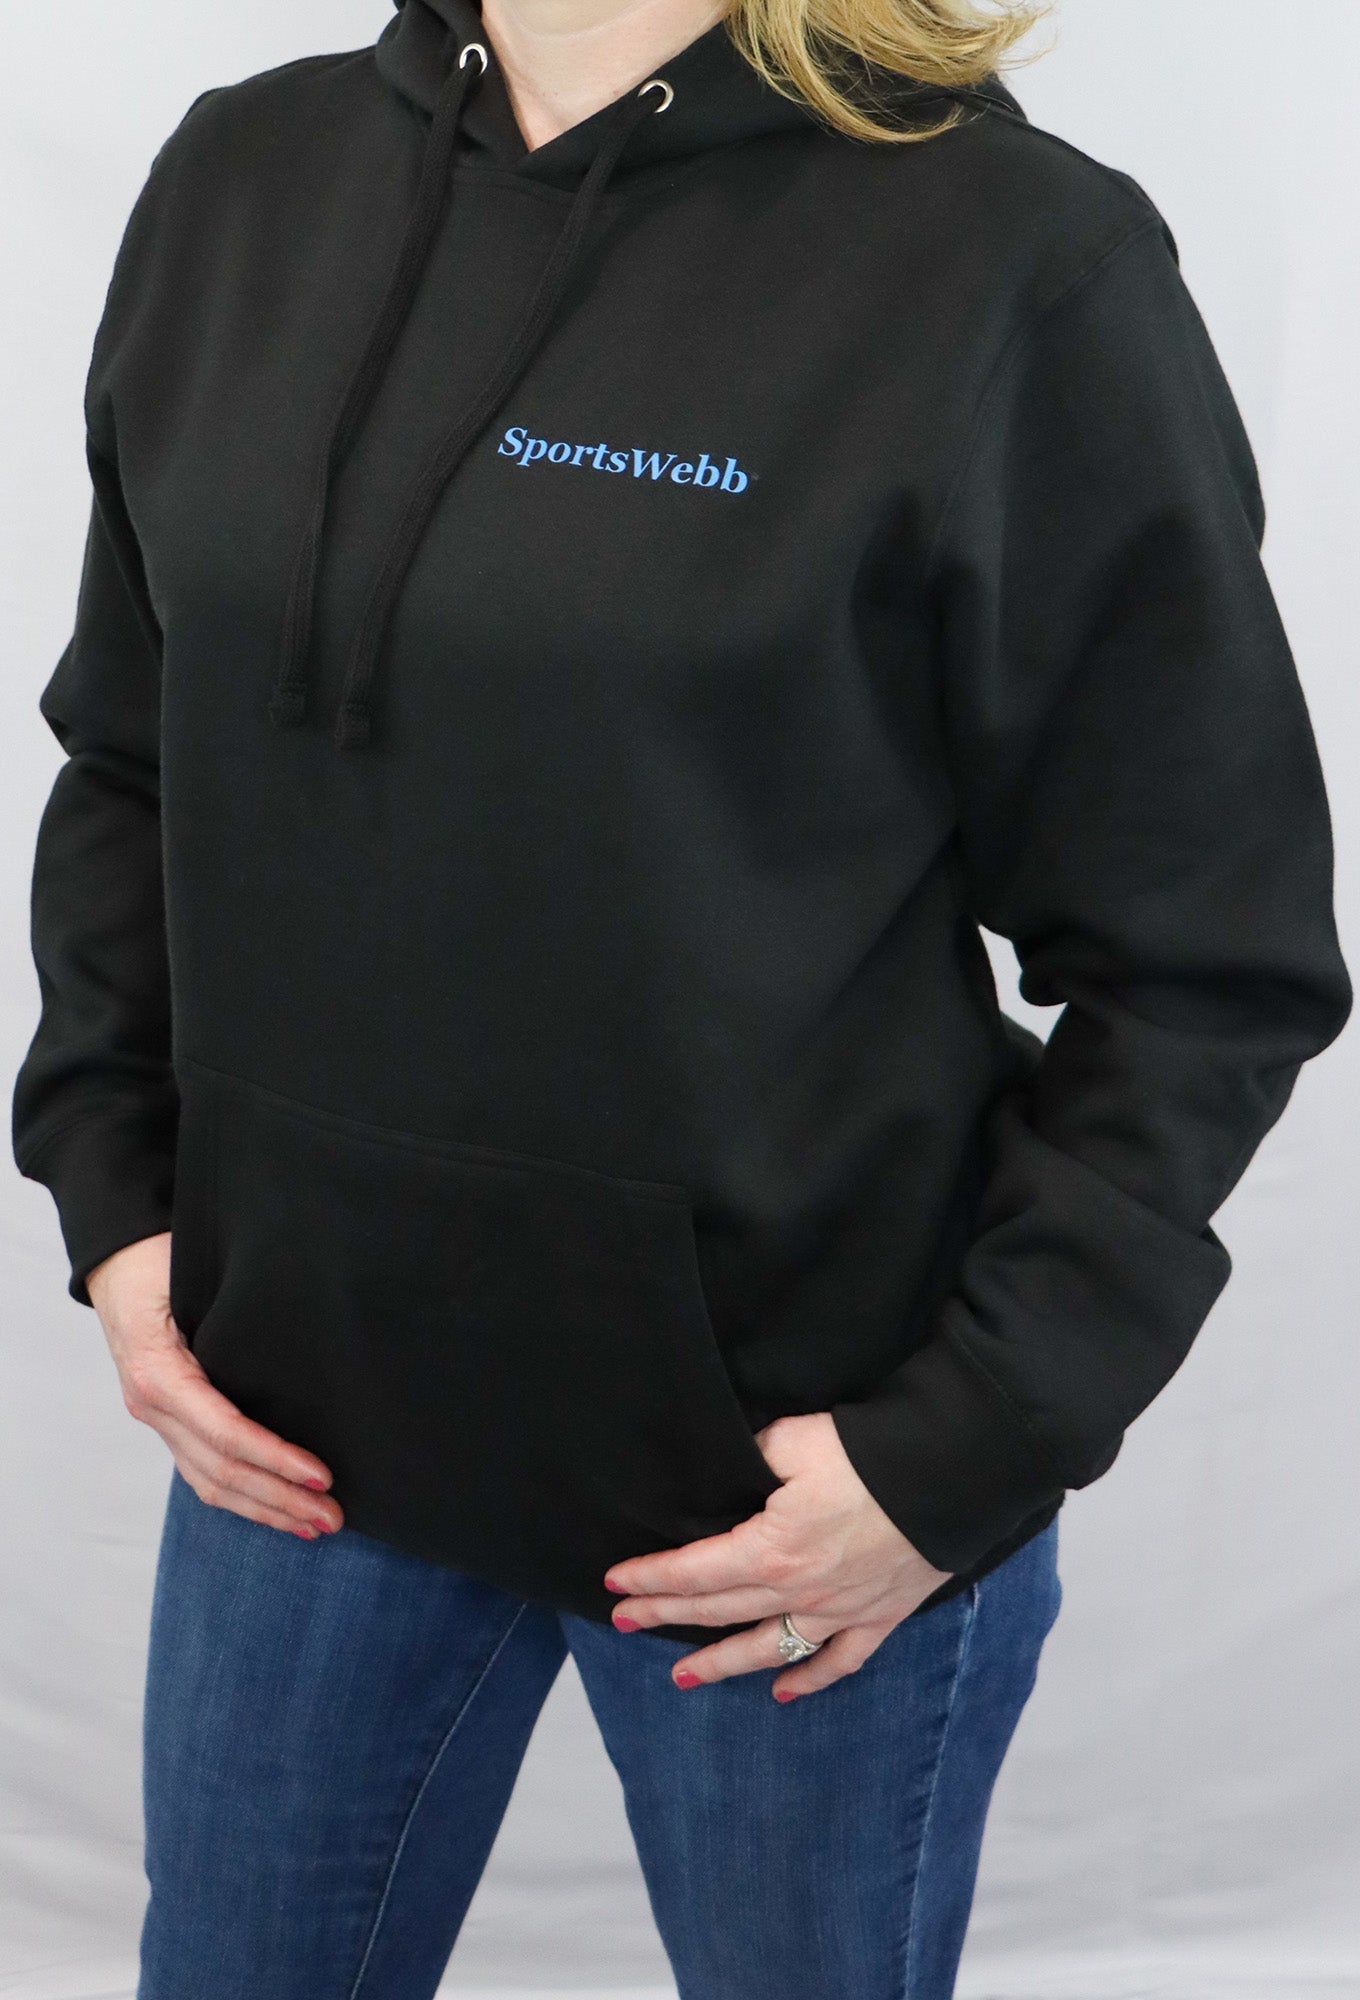 SportsWebb Hoodie- Sweatshirt Black